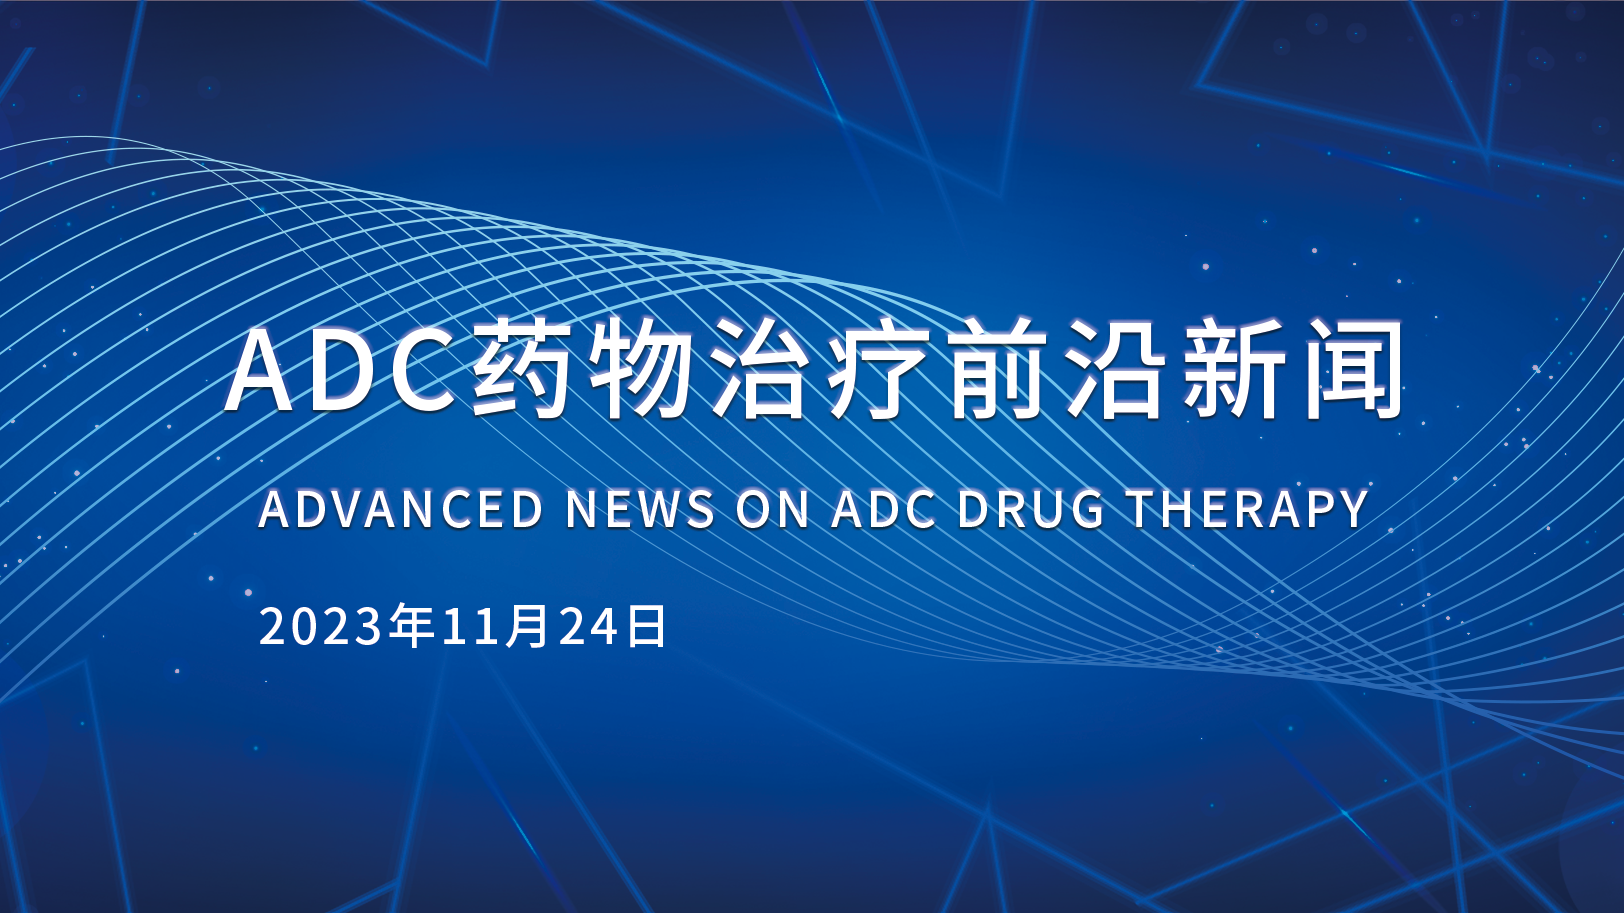 ADC药物治疗前沿新闻